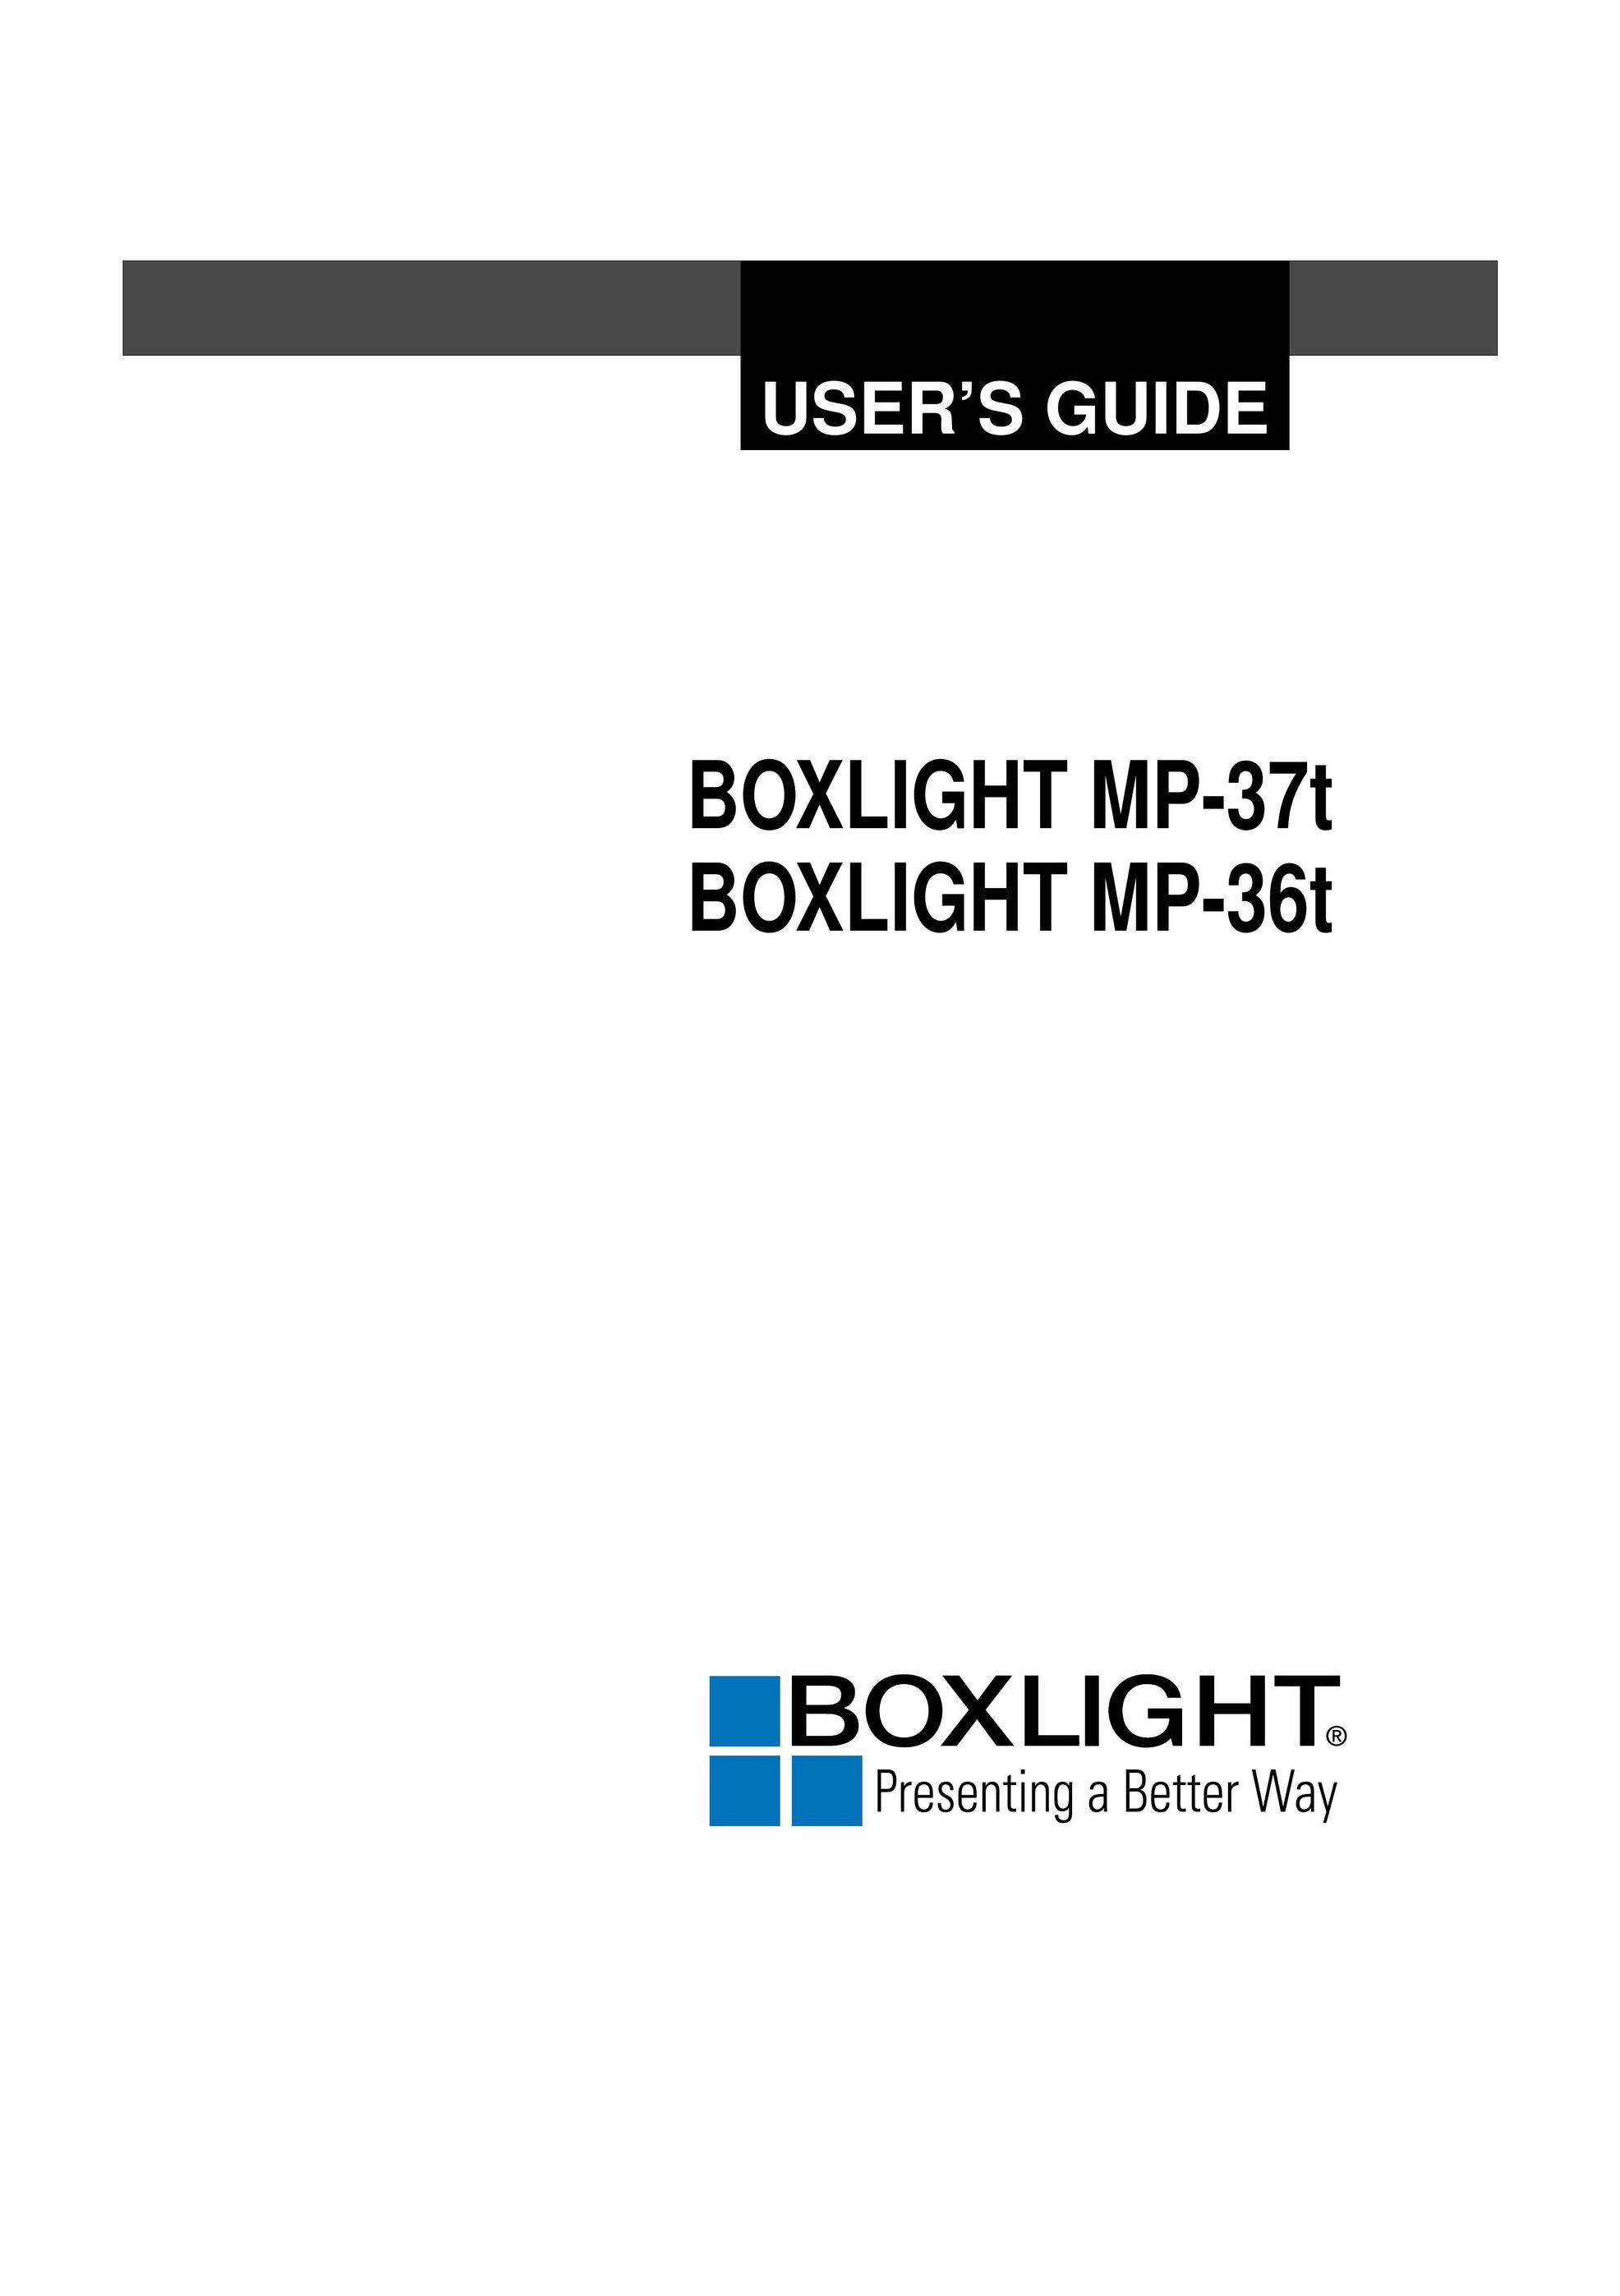 BOXLIGHT MP-36t Projector User Manual